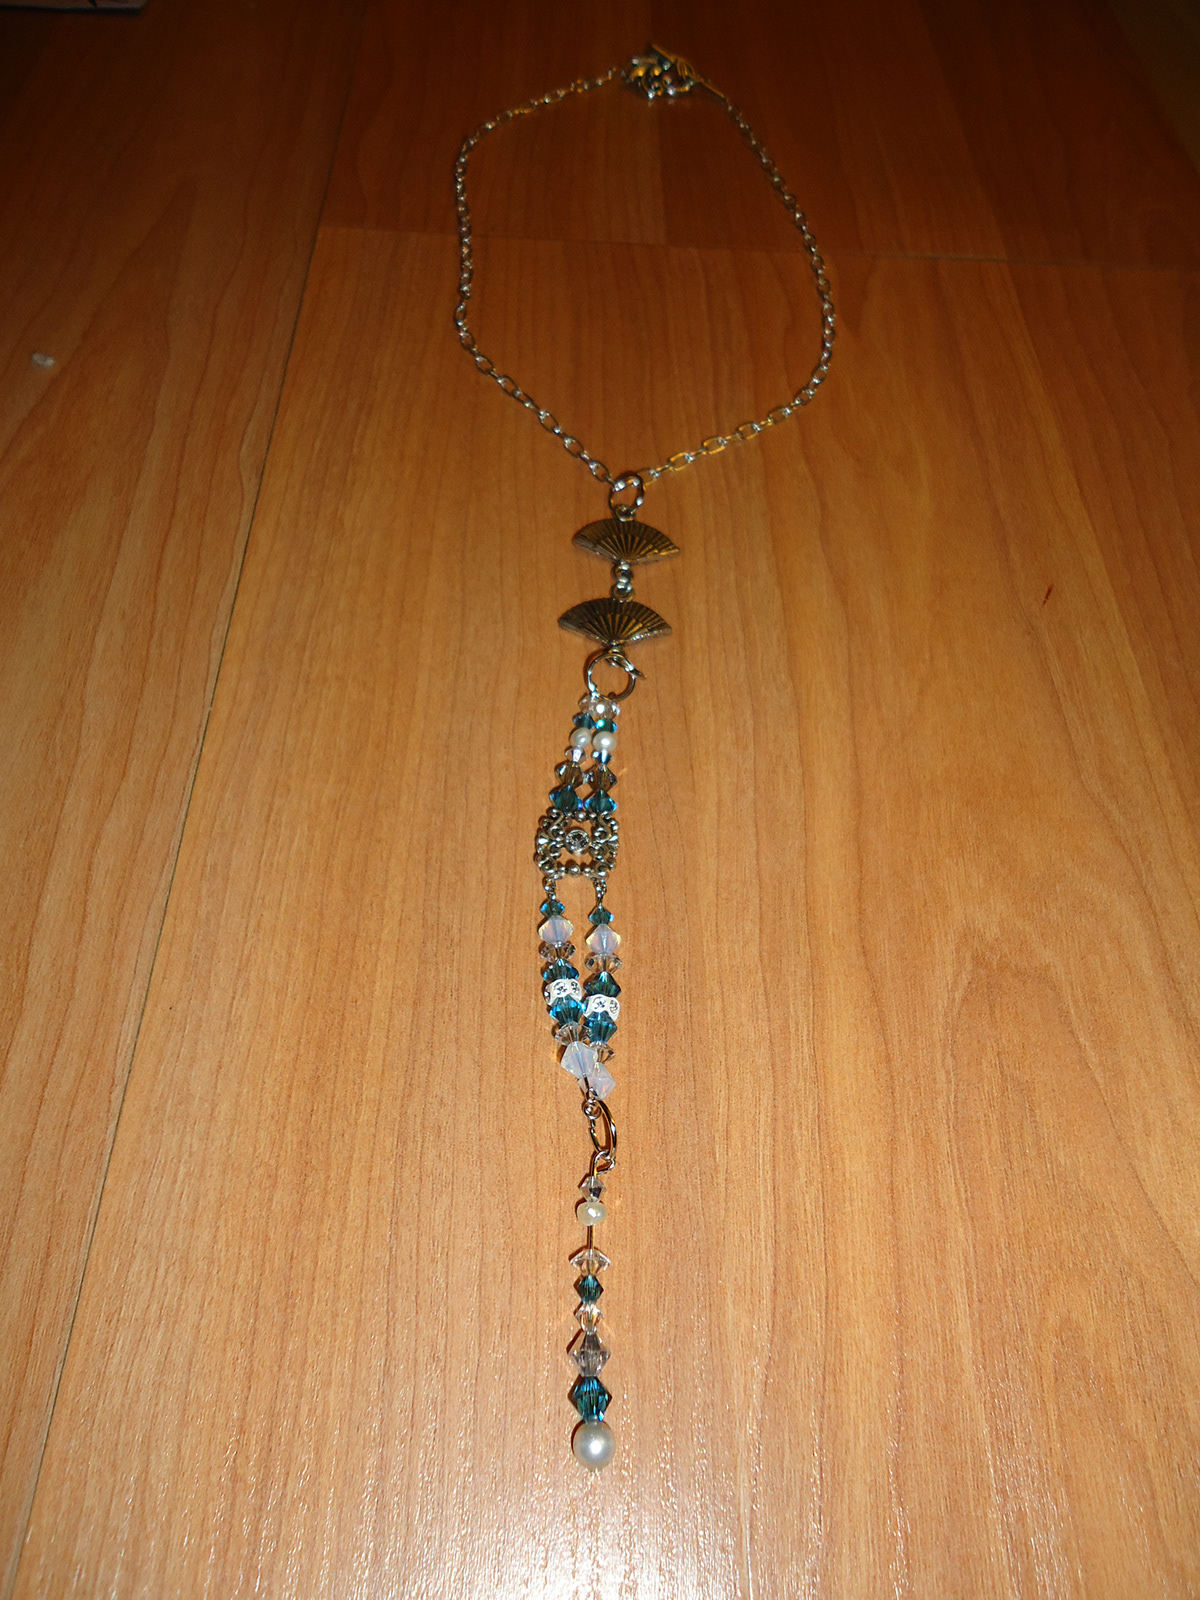 Necklace Swarovski fans jewelry DIY chains